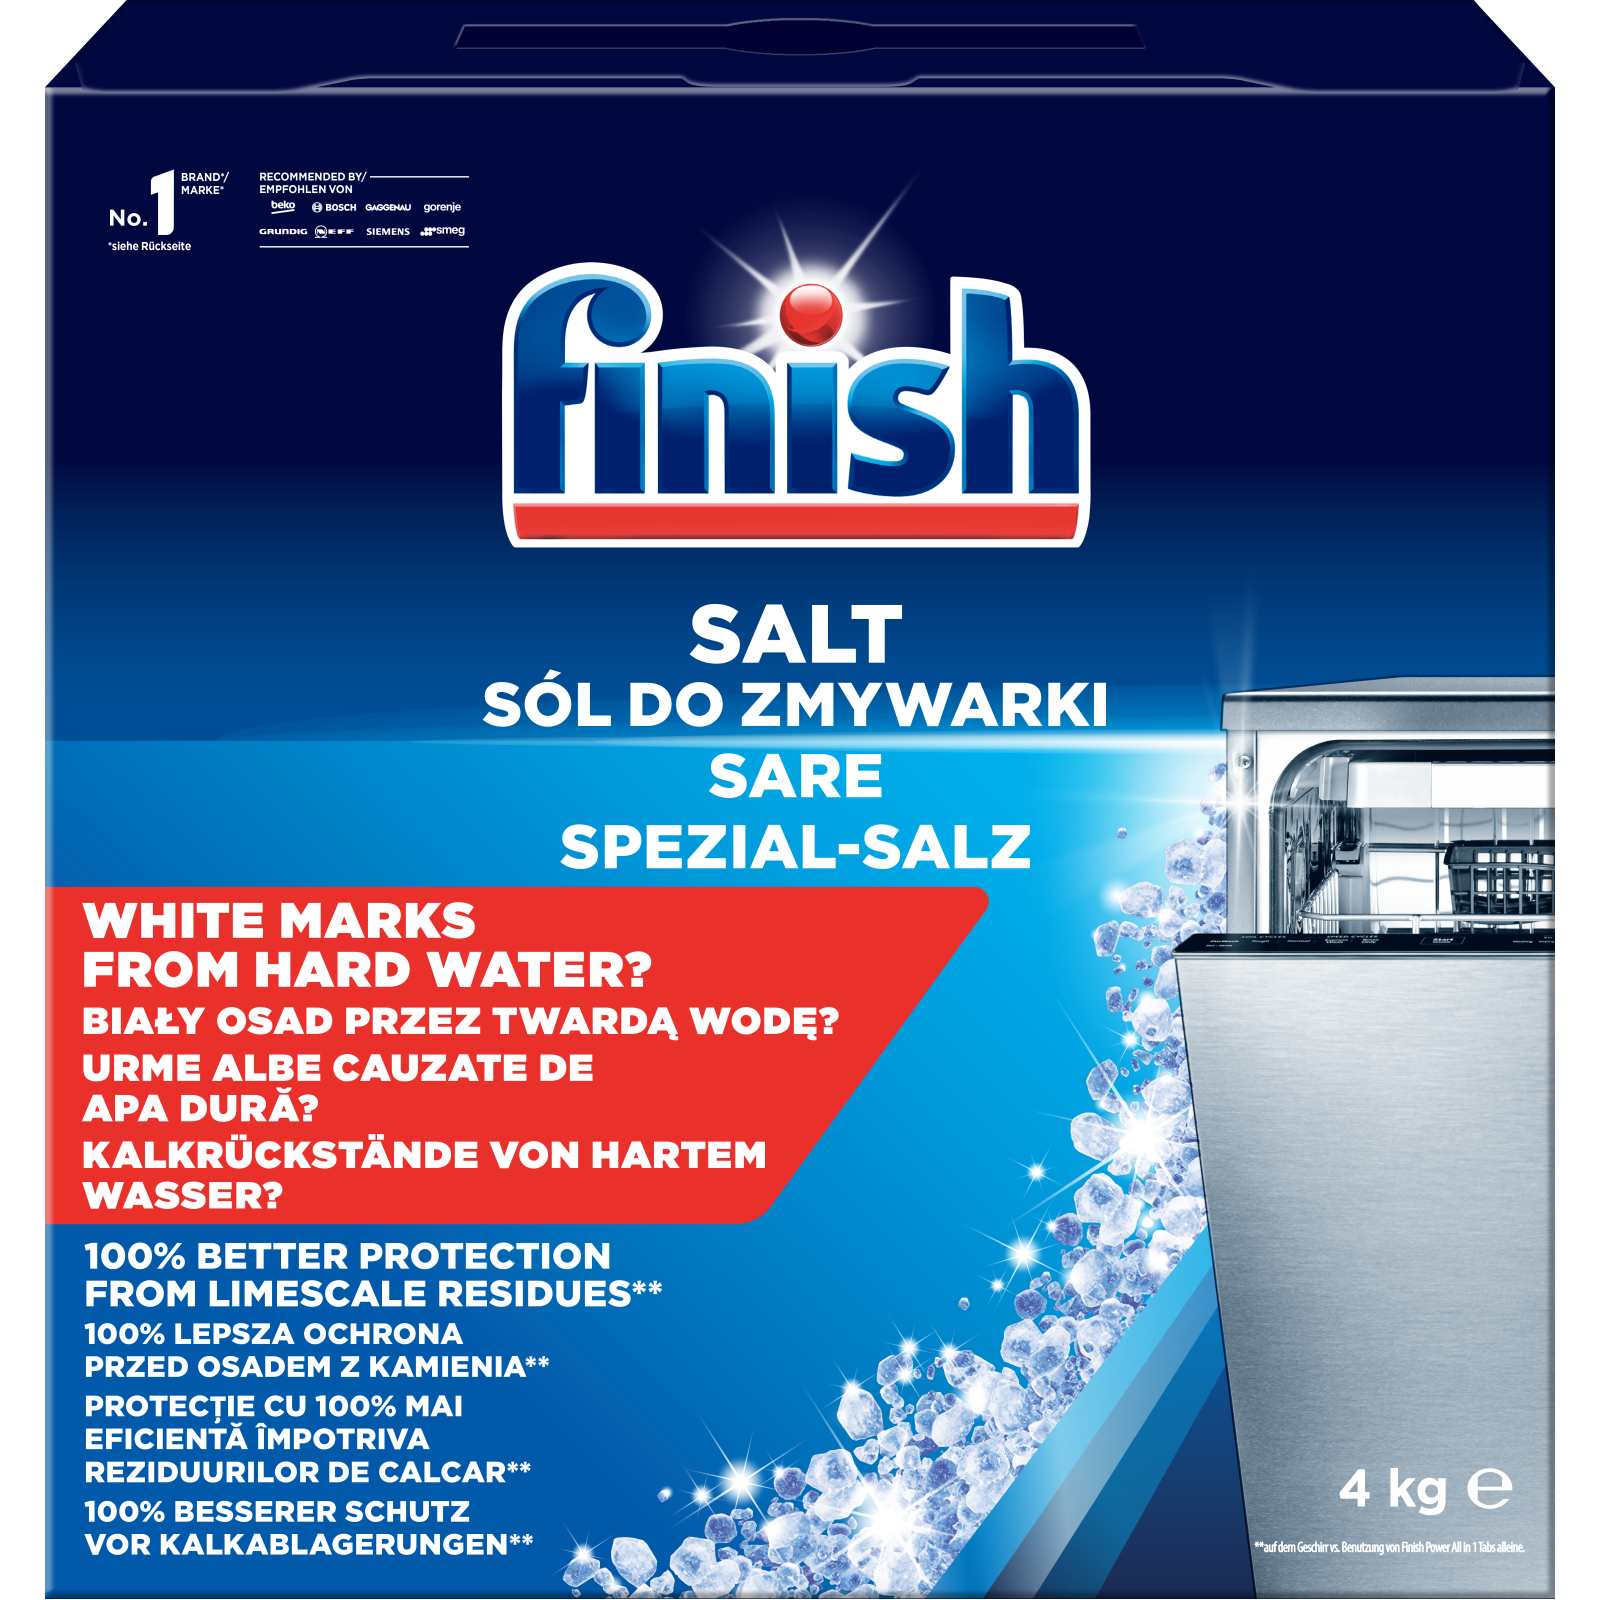 Соль для посудомоечных машин Finish 1.5 кг (8594002682736)